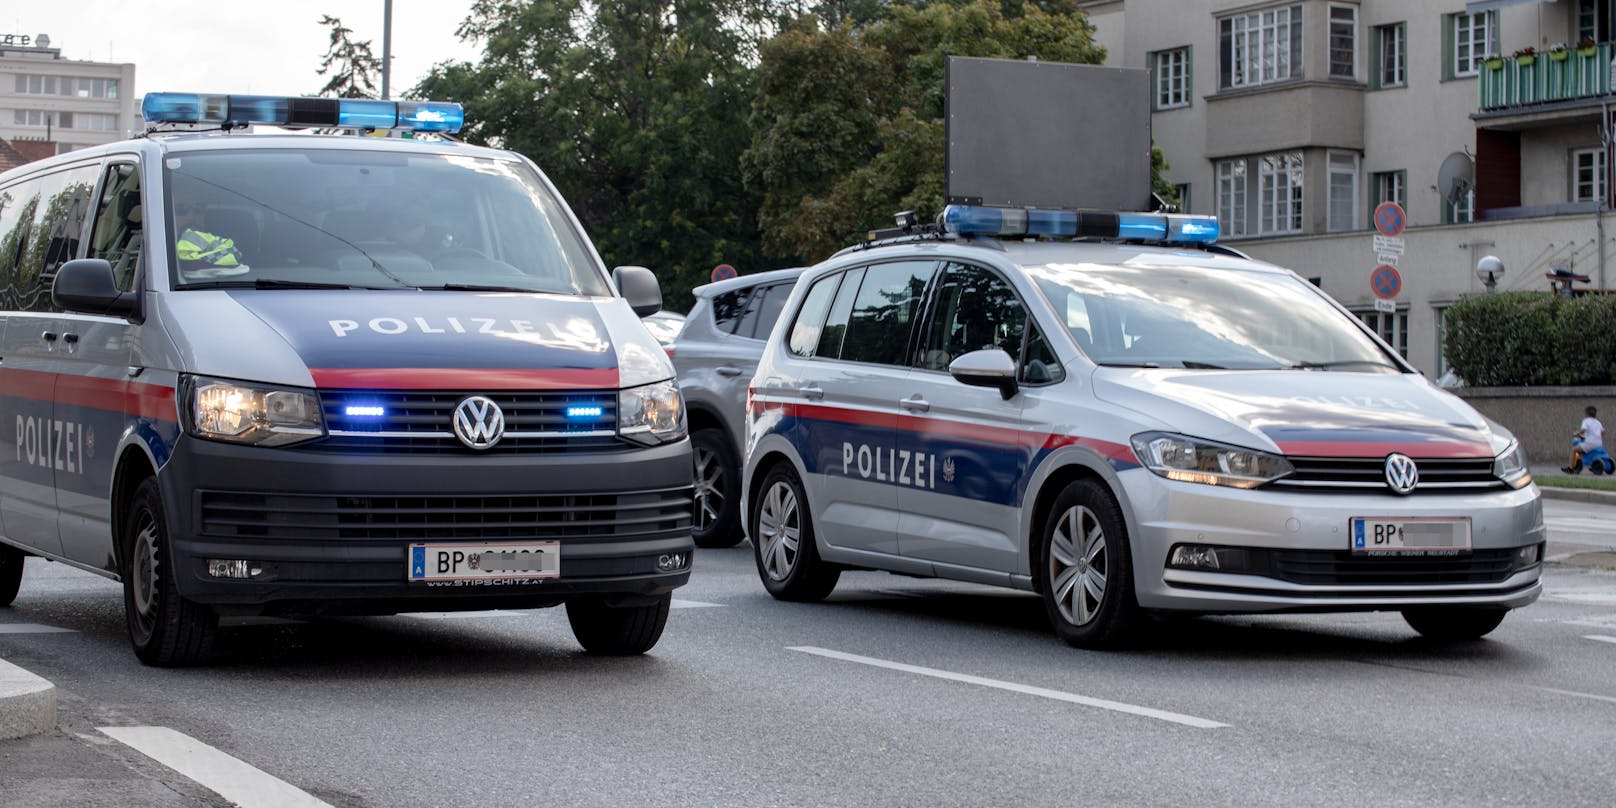 Wiener Polizeifahrzeuge im Einsatz. (Symbolfoto)